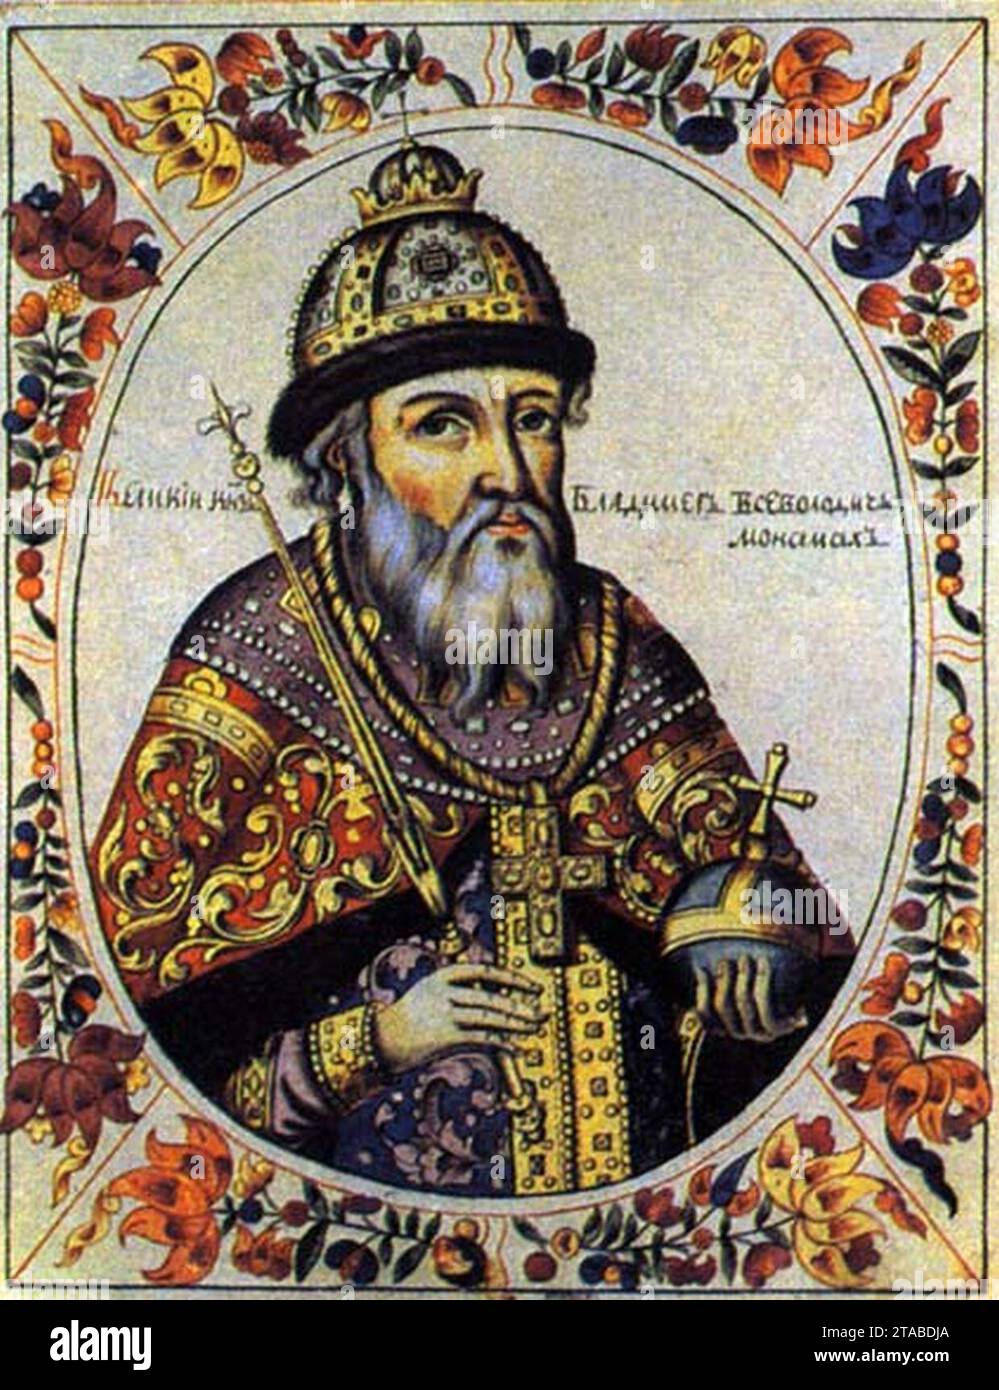 Vladimir-II-Vsevolodovich Monomakh. Stock Photo